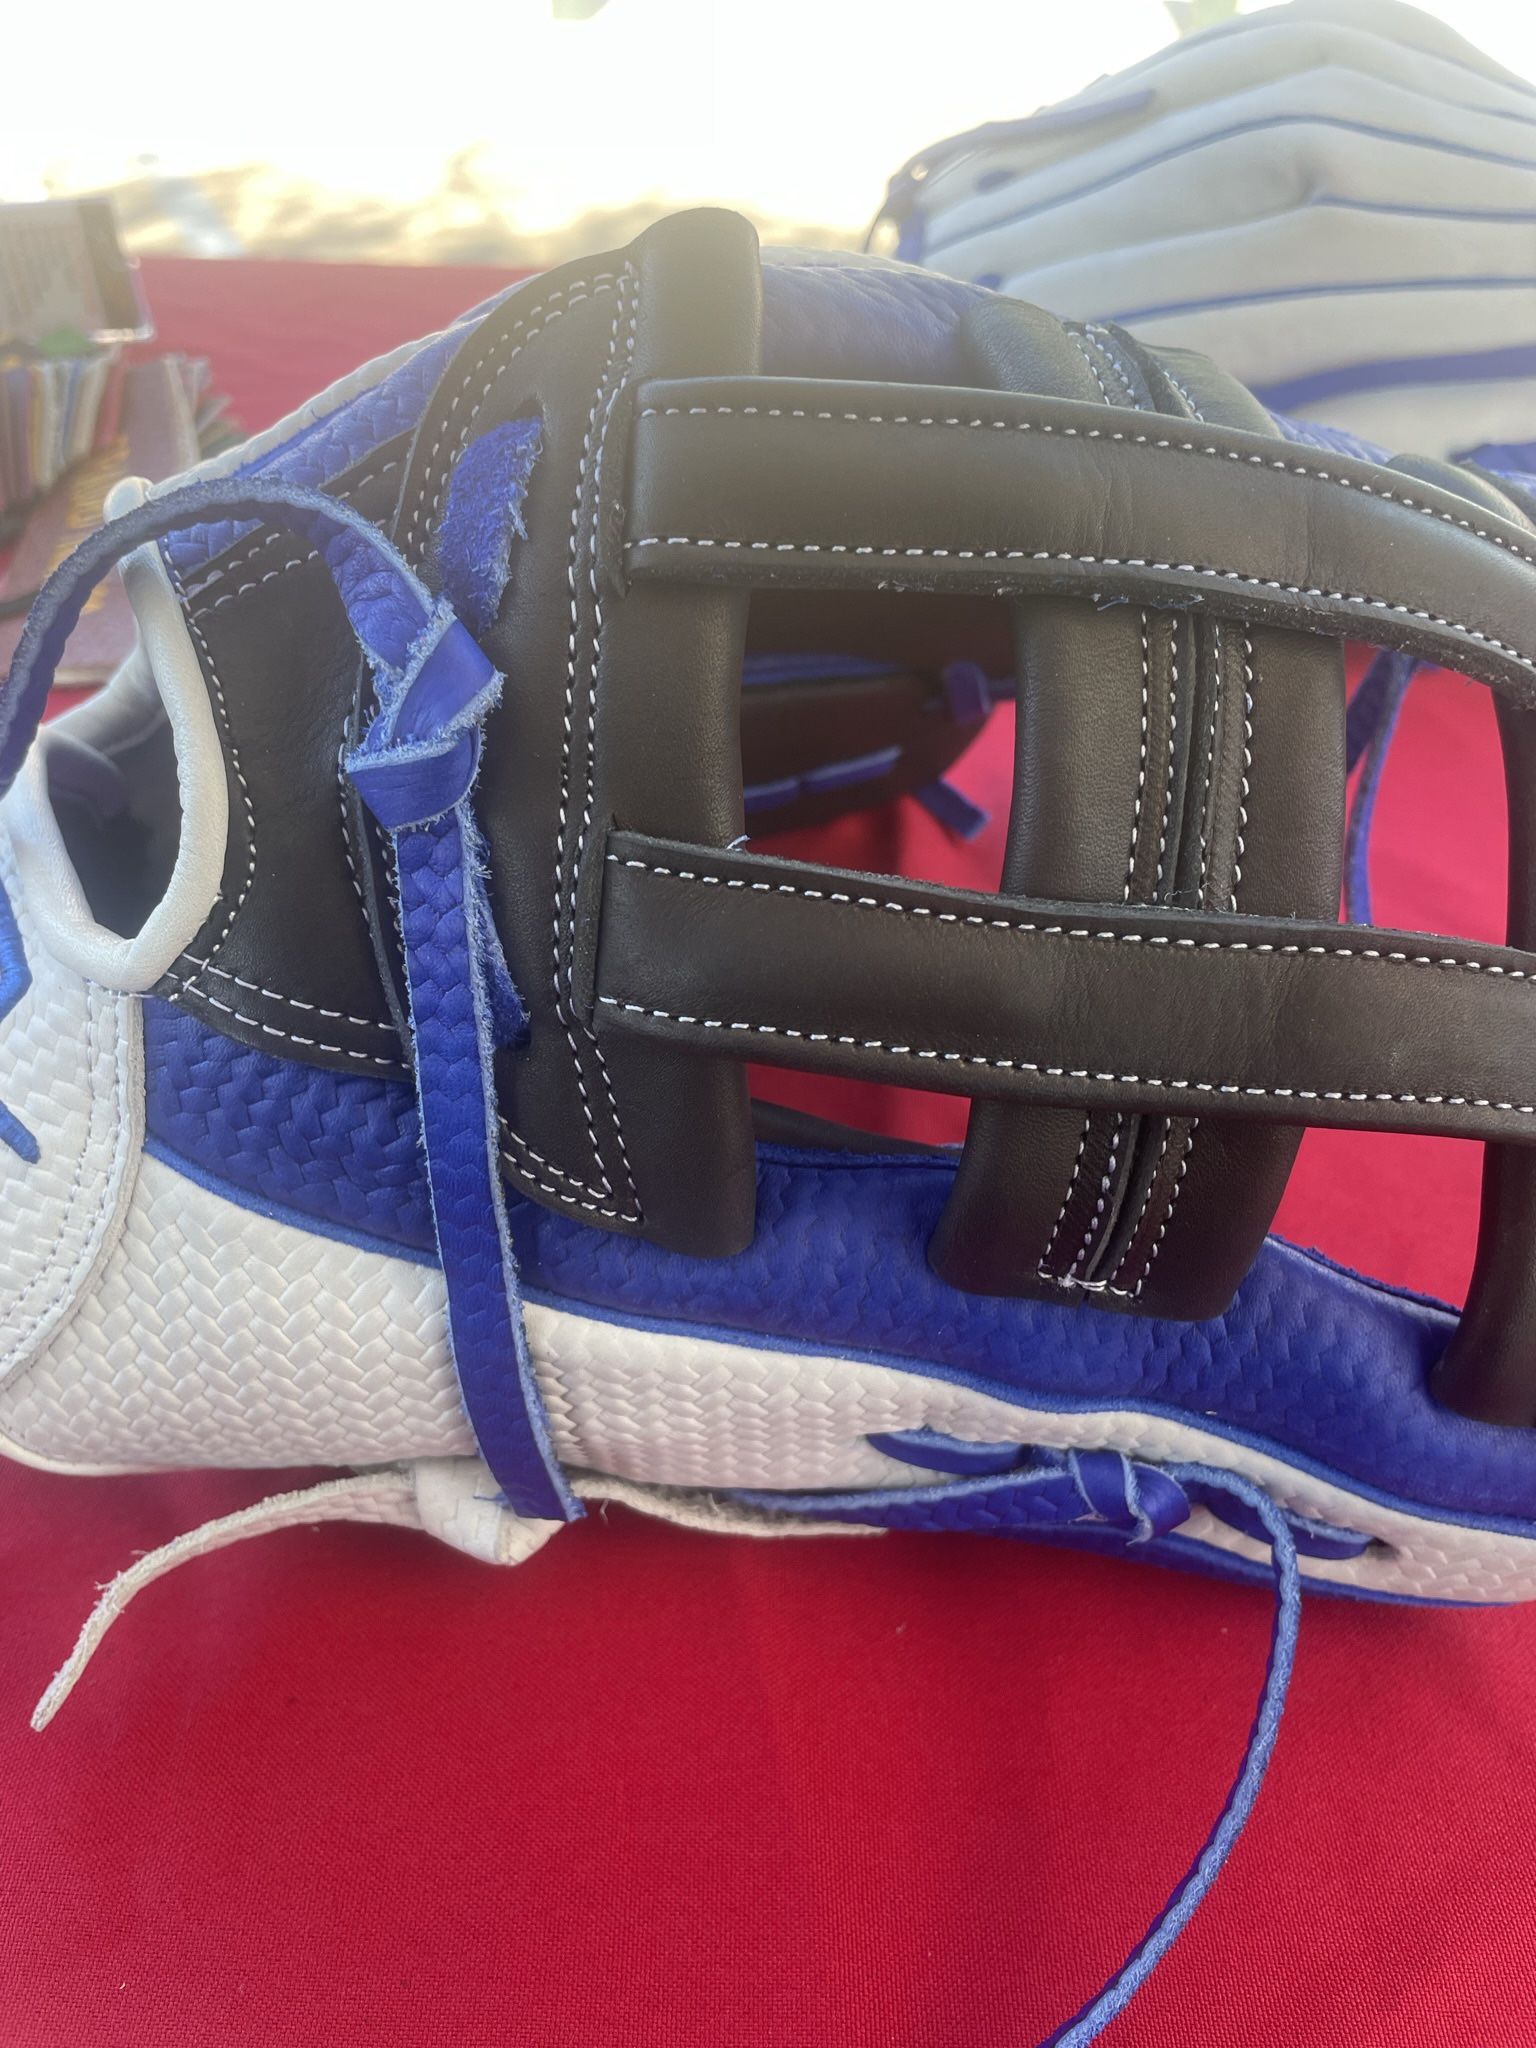 Baseball Glove/ Softball Glove